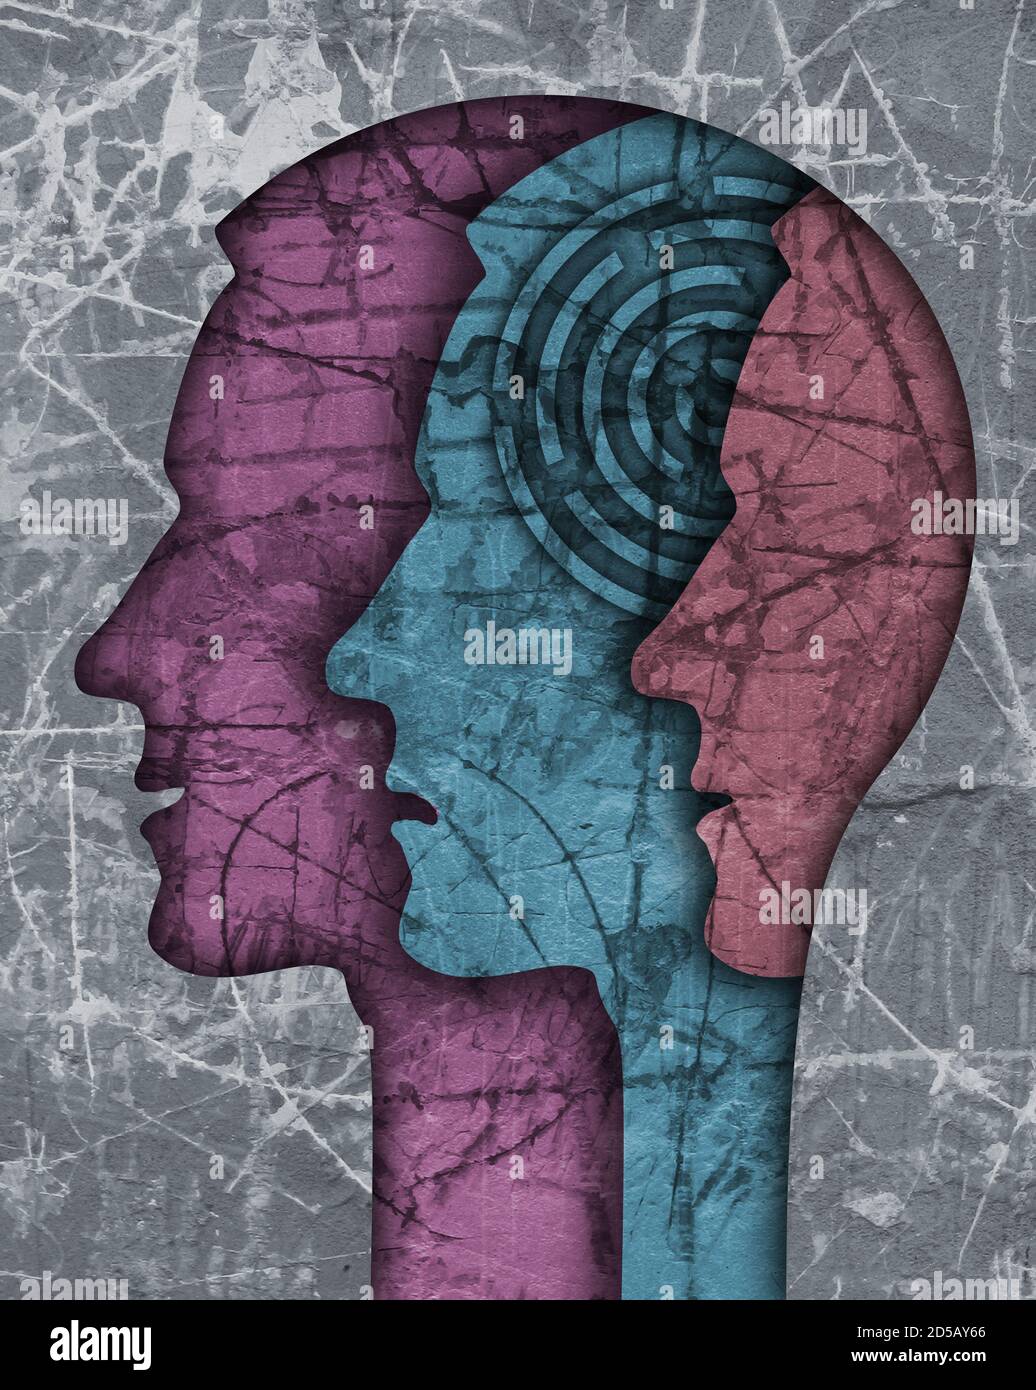 Silhouette de la tête masculine de schizophrénie. Illustration avec trois têtes mâles stylisées sur une texture grunge symbolisant la schizophrénie, dépression. Banque D'Images